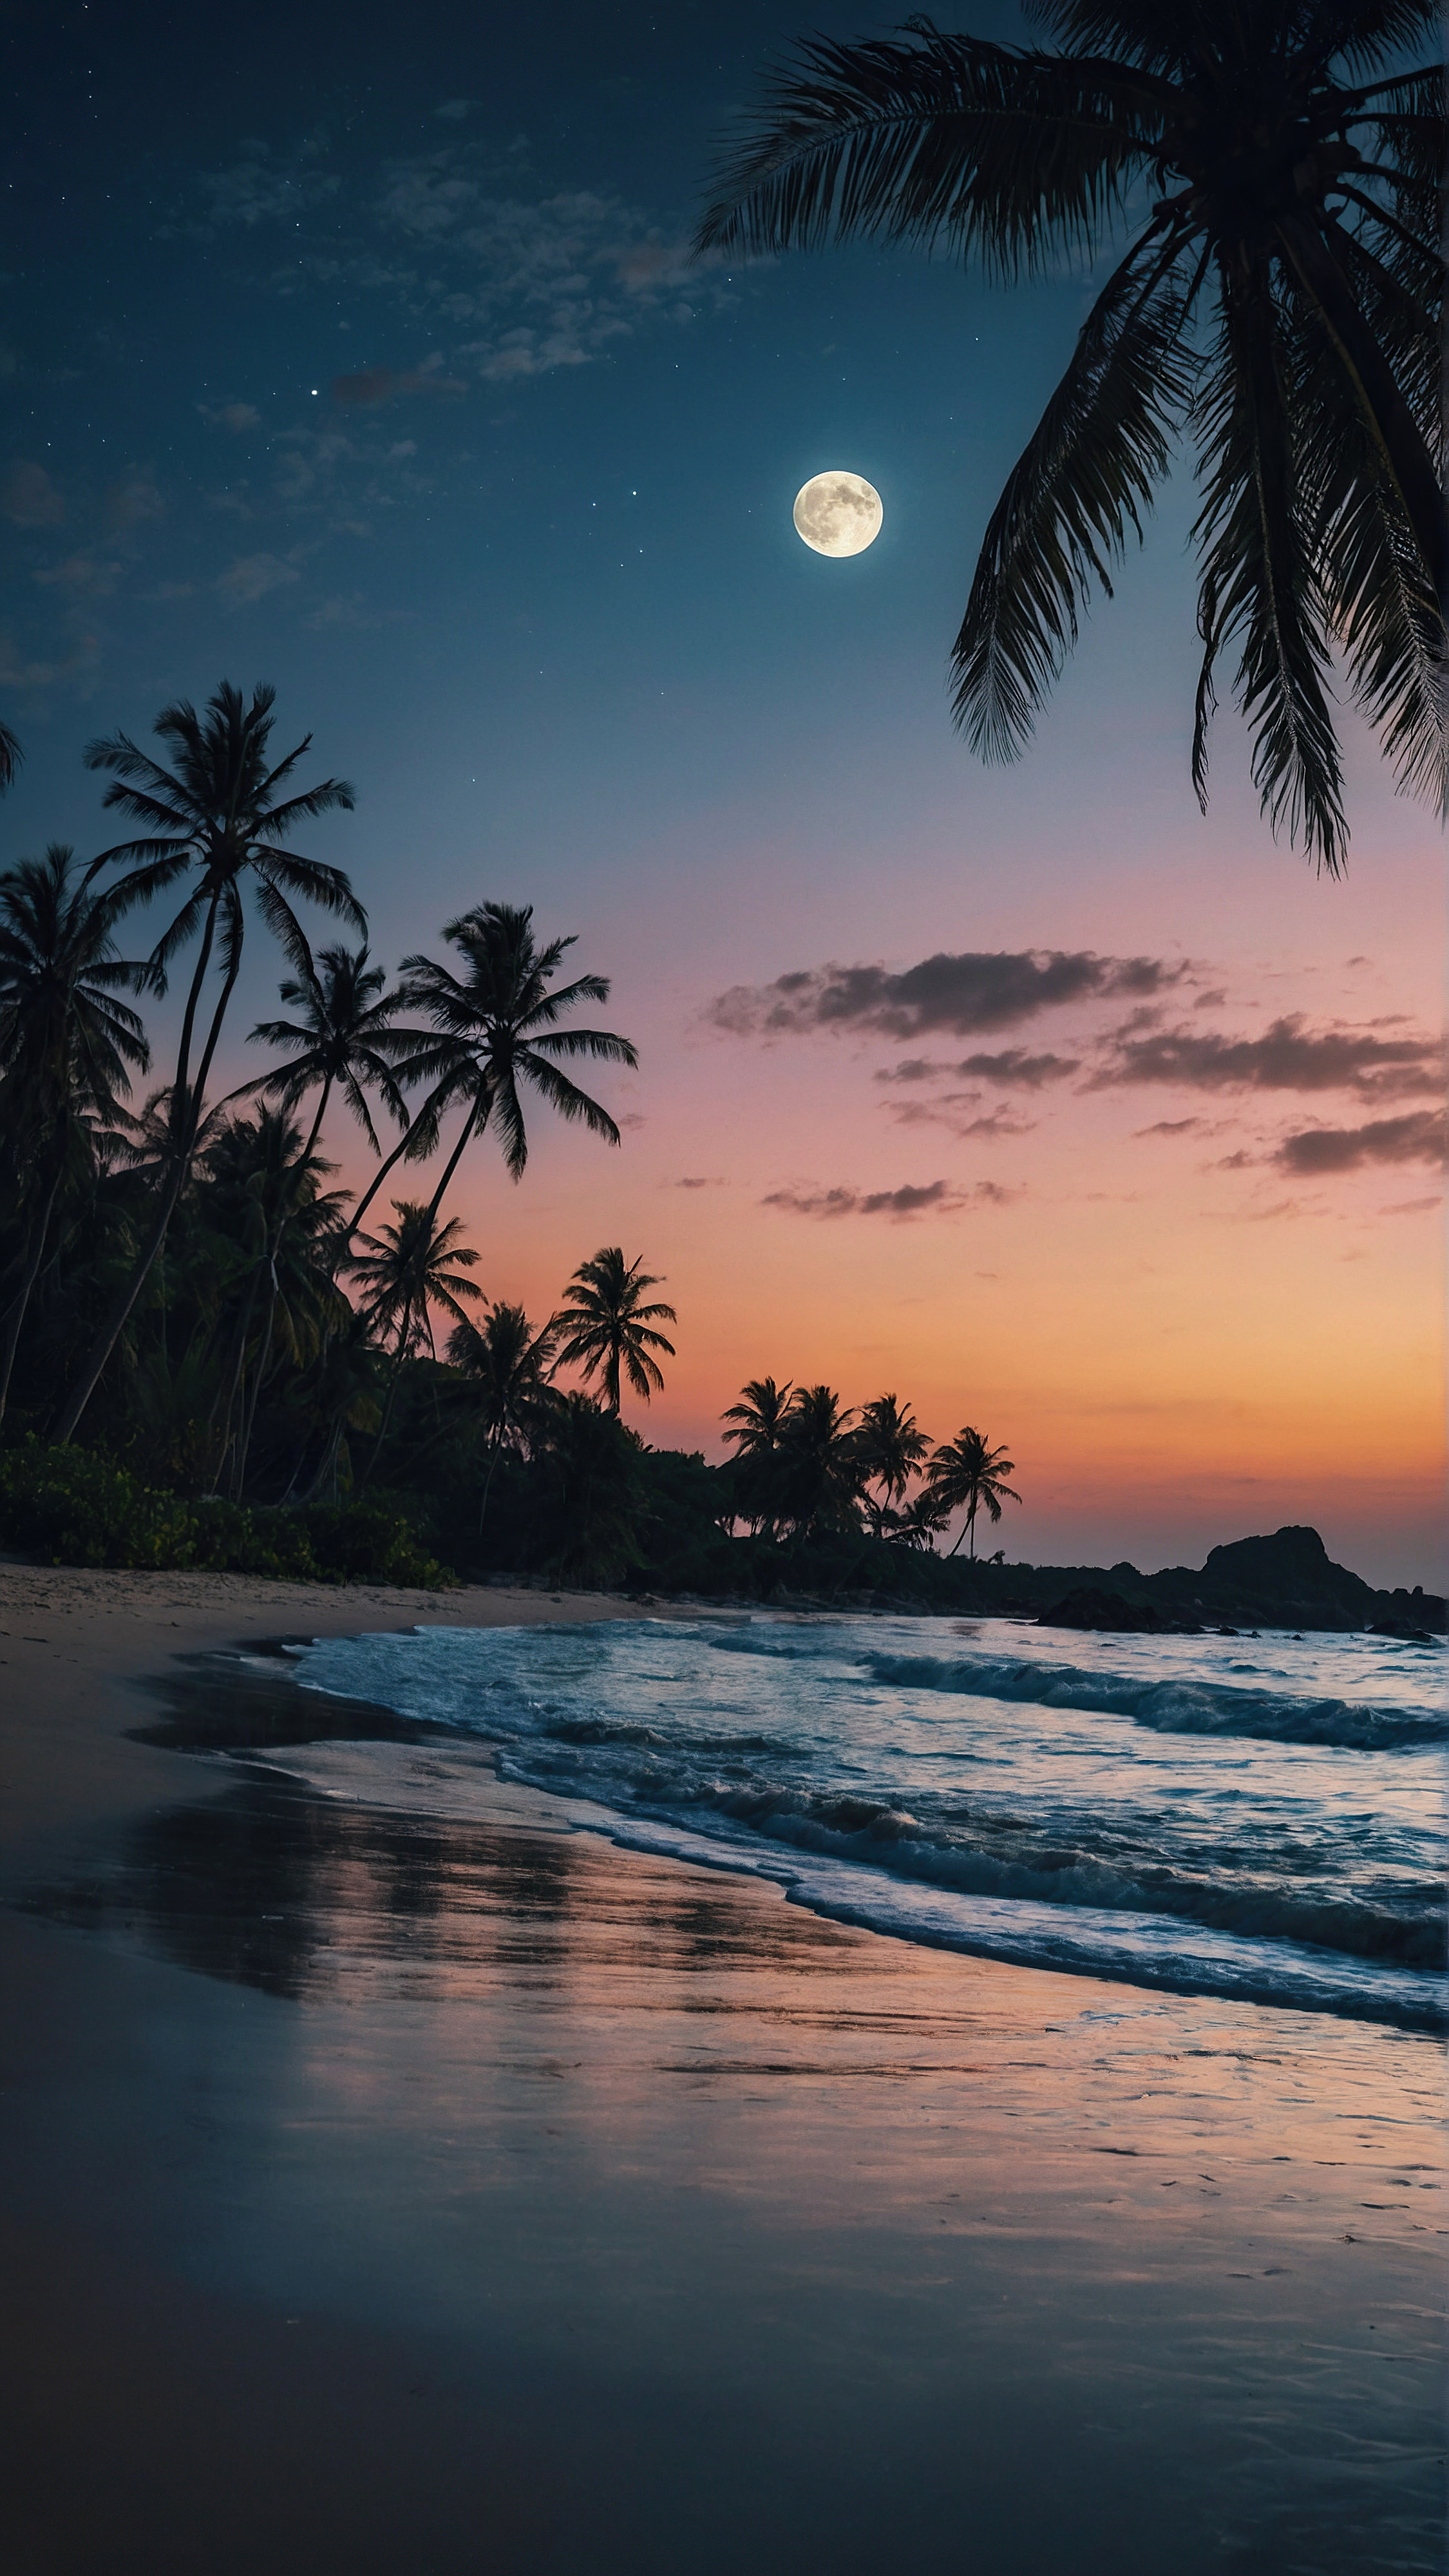 Découvrez le charme tropical de notre fond d'écran iPhone en 4K gratuit, où une grande lune illumine une scène de plage envoûtante au crépuscule, se reflétant sur les vagues qui clapotent doucement et mettant en valeur les silhouettes des palmiers dans ce paysage serein. 